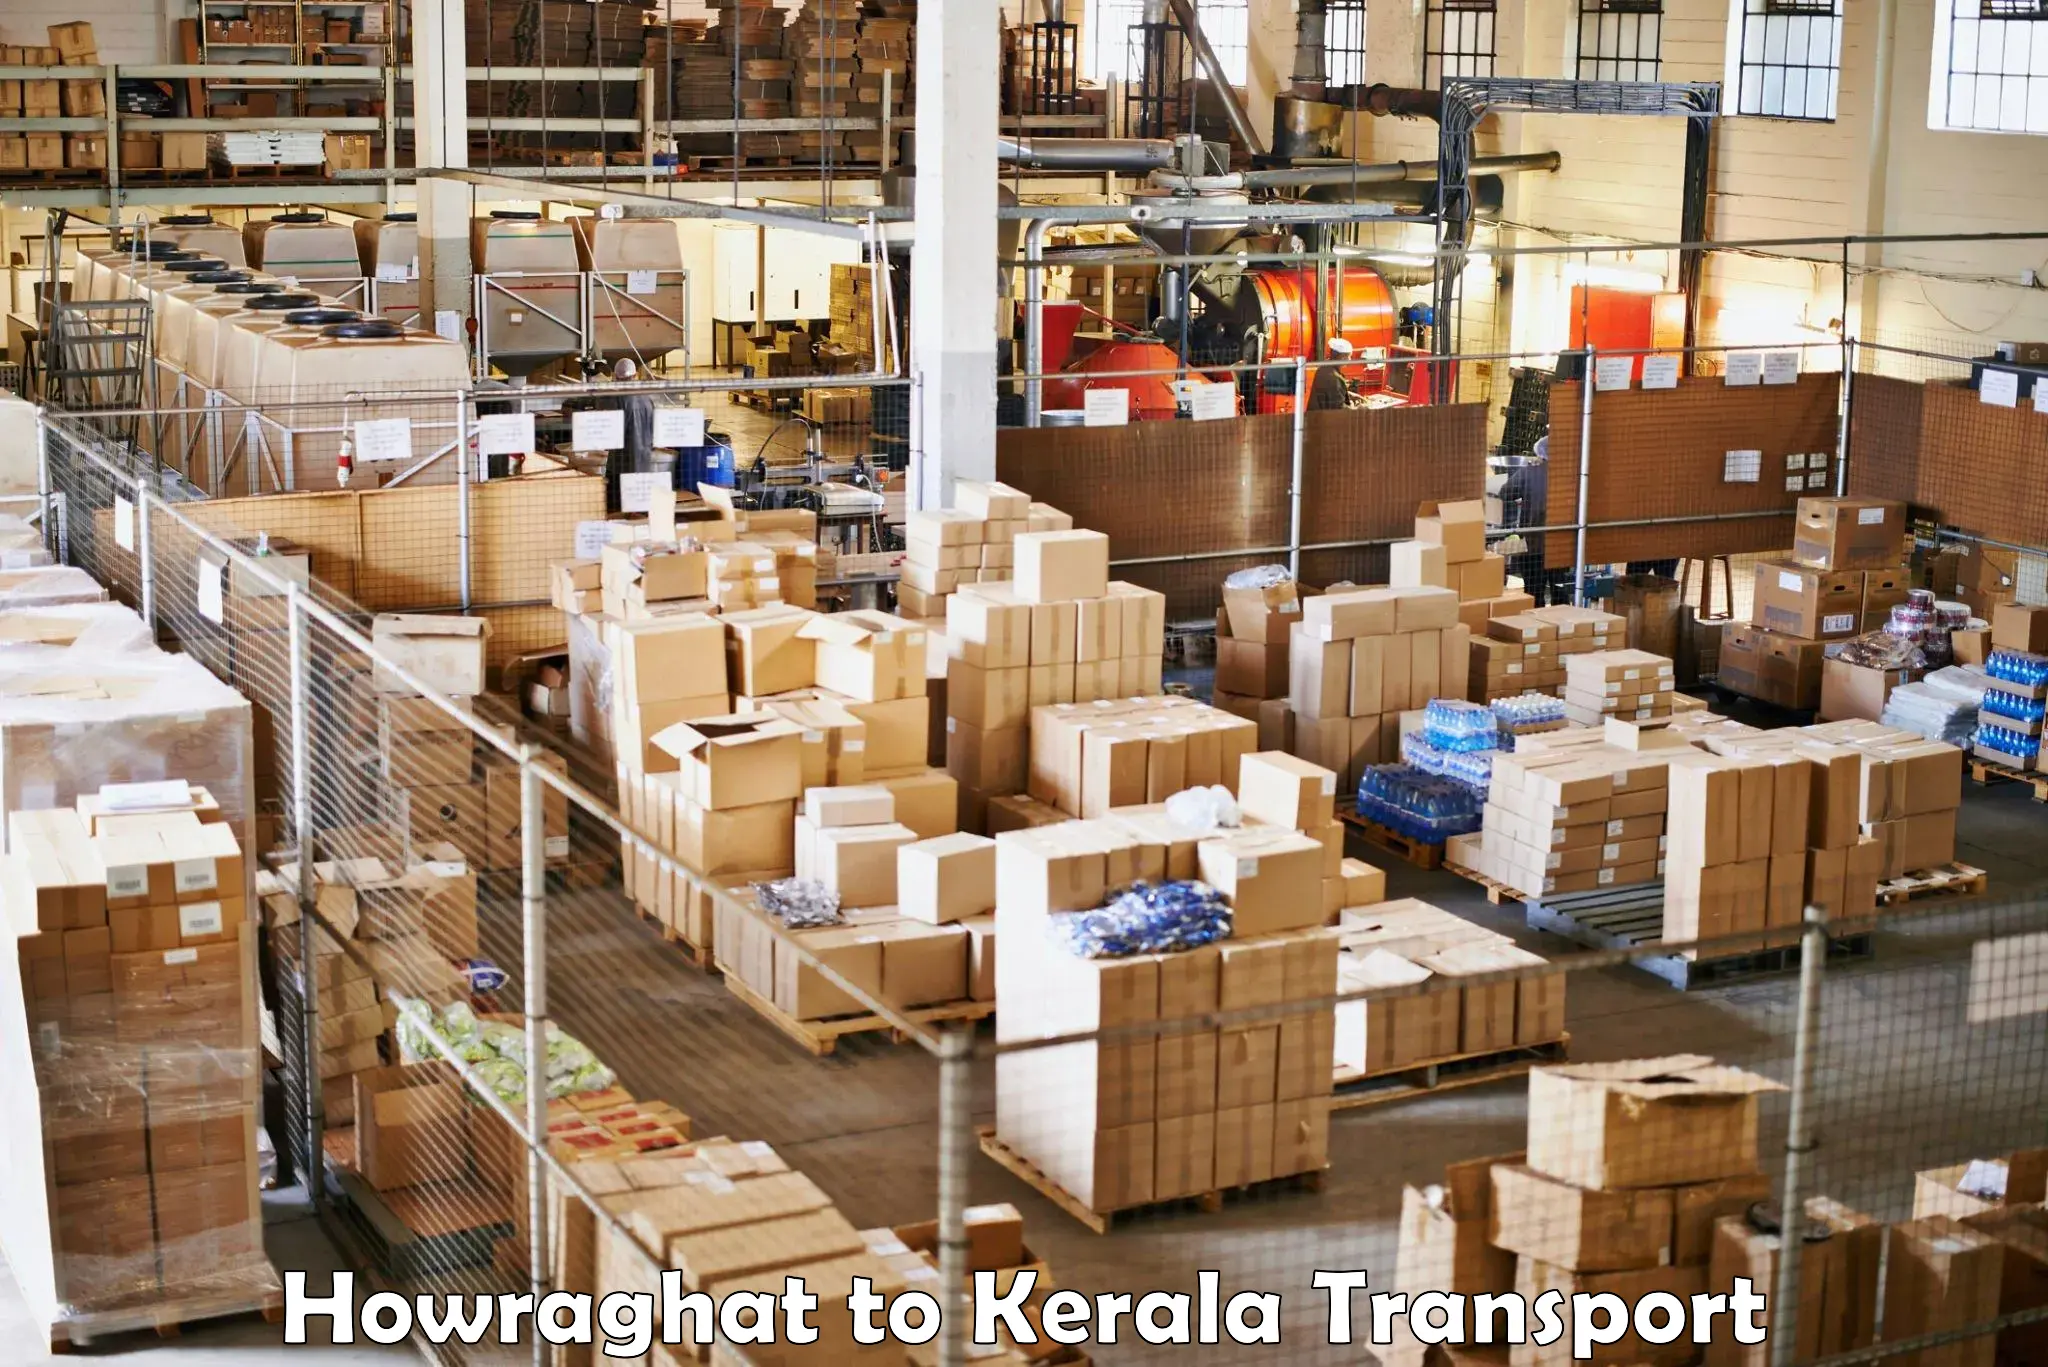 Commercial transport service Howraghat to Guruvayoor